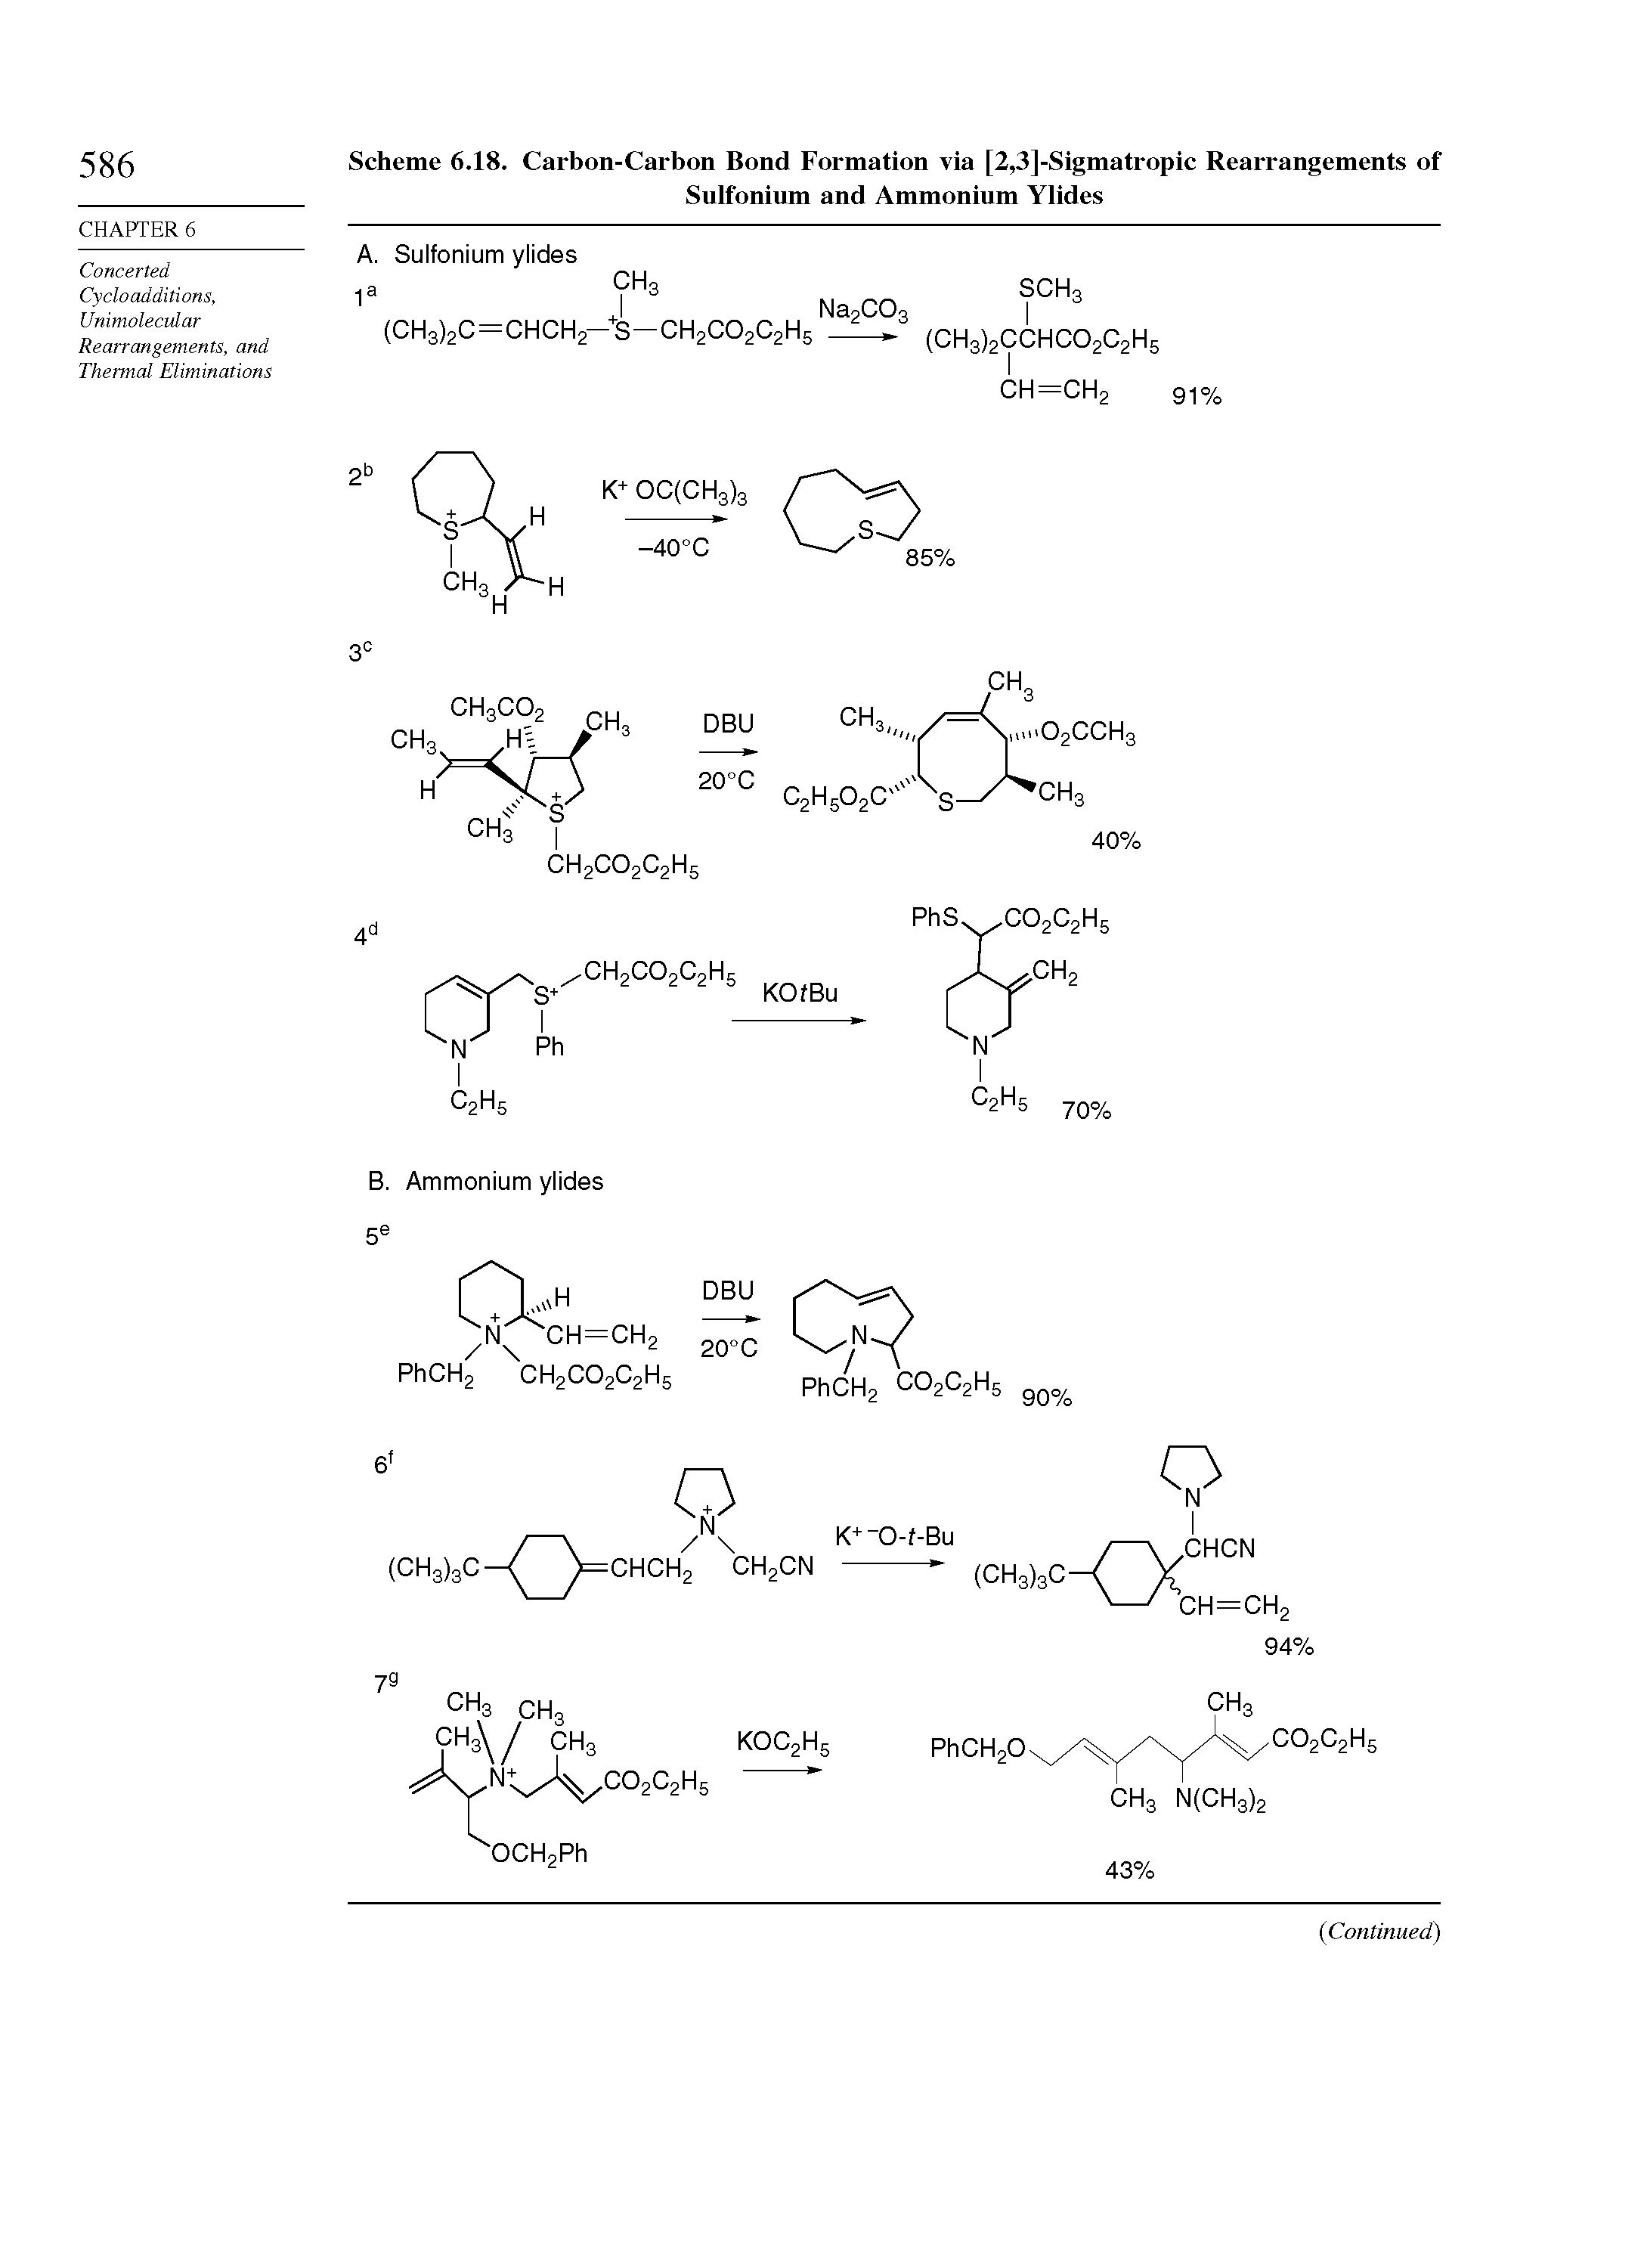 Scheme 6.18. Carbon-Carbon Bond Formation via [2,3]-Sigmatropic Rearrangements of Sulfonium and Ammonium Ylides...